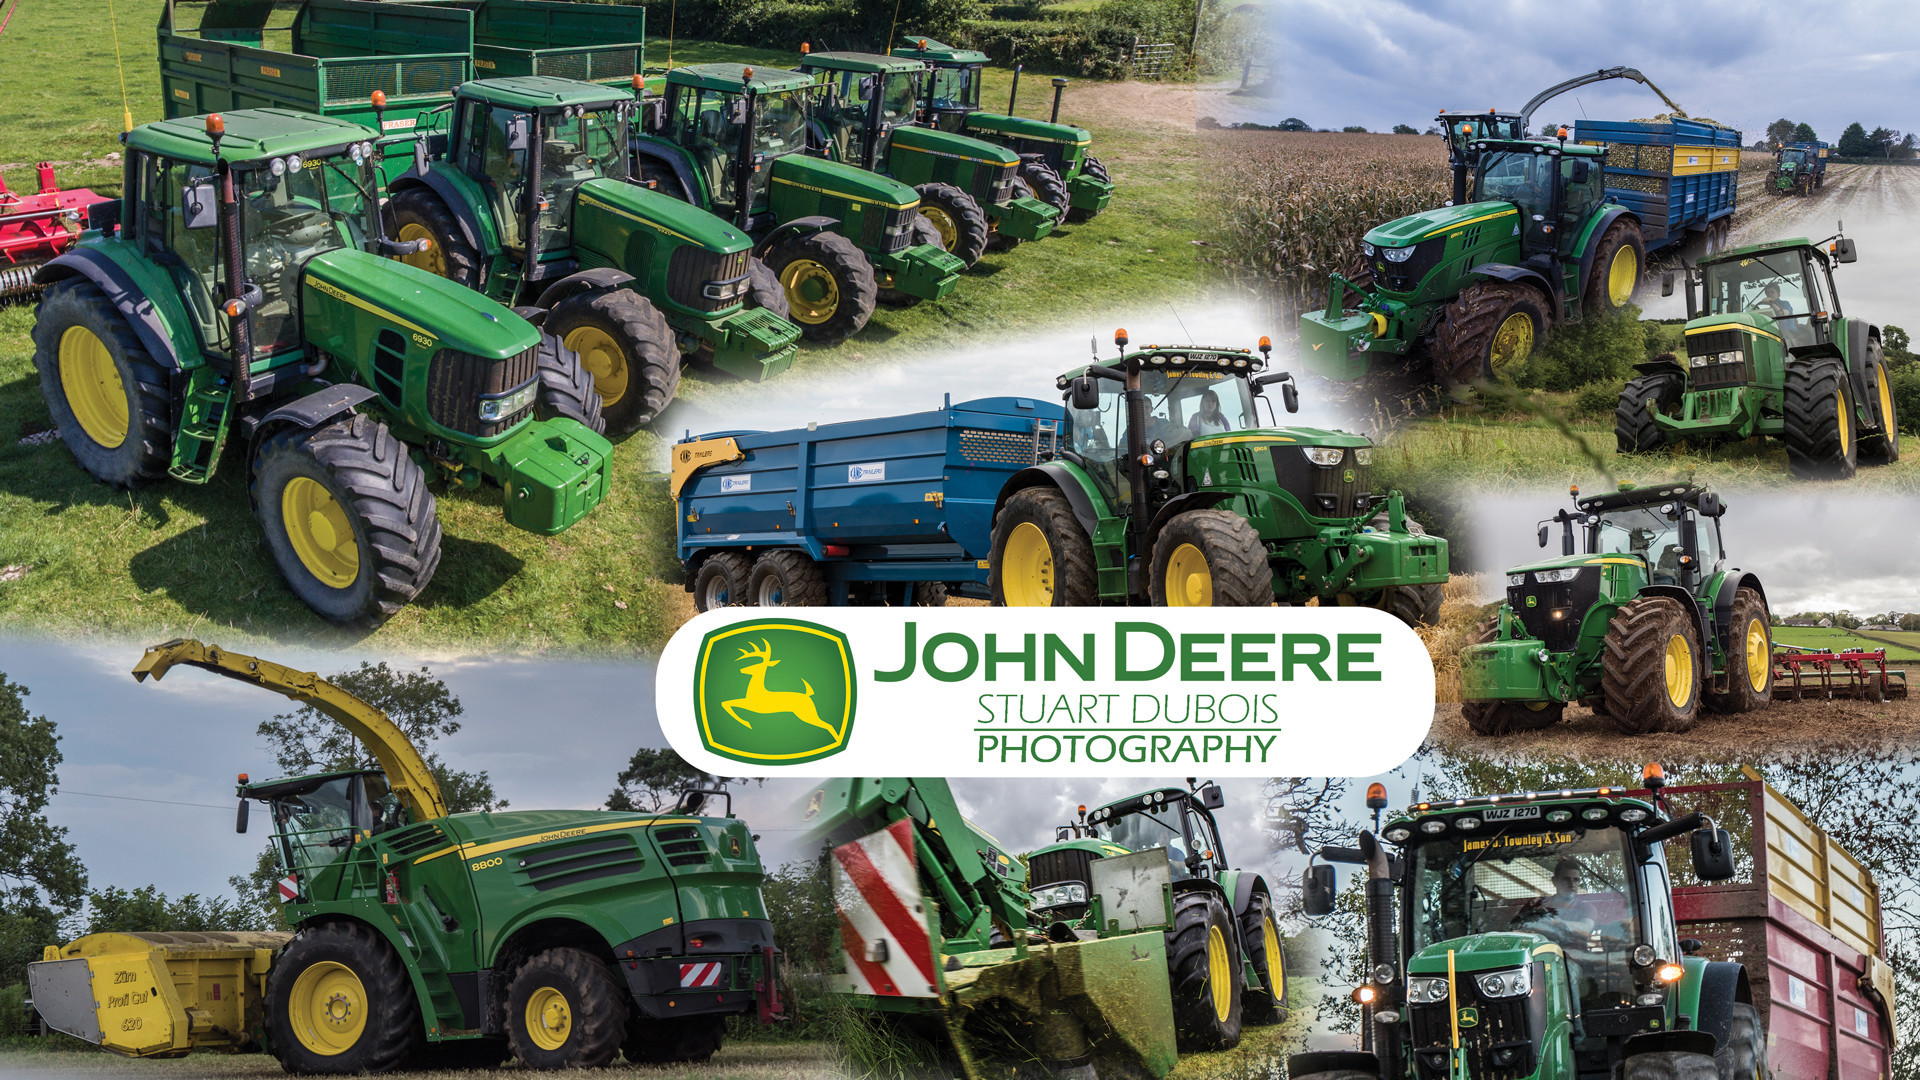 John deere tractor Wallpapers Download | MobCup